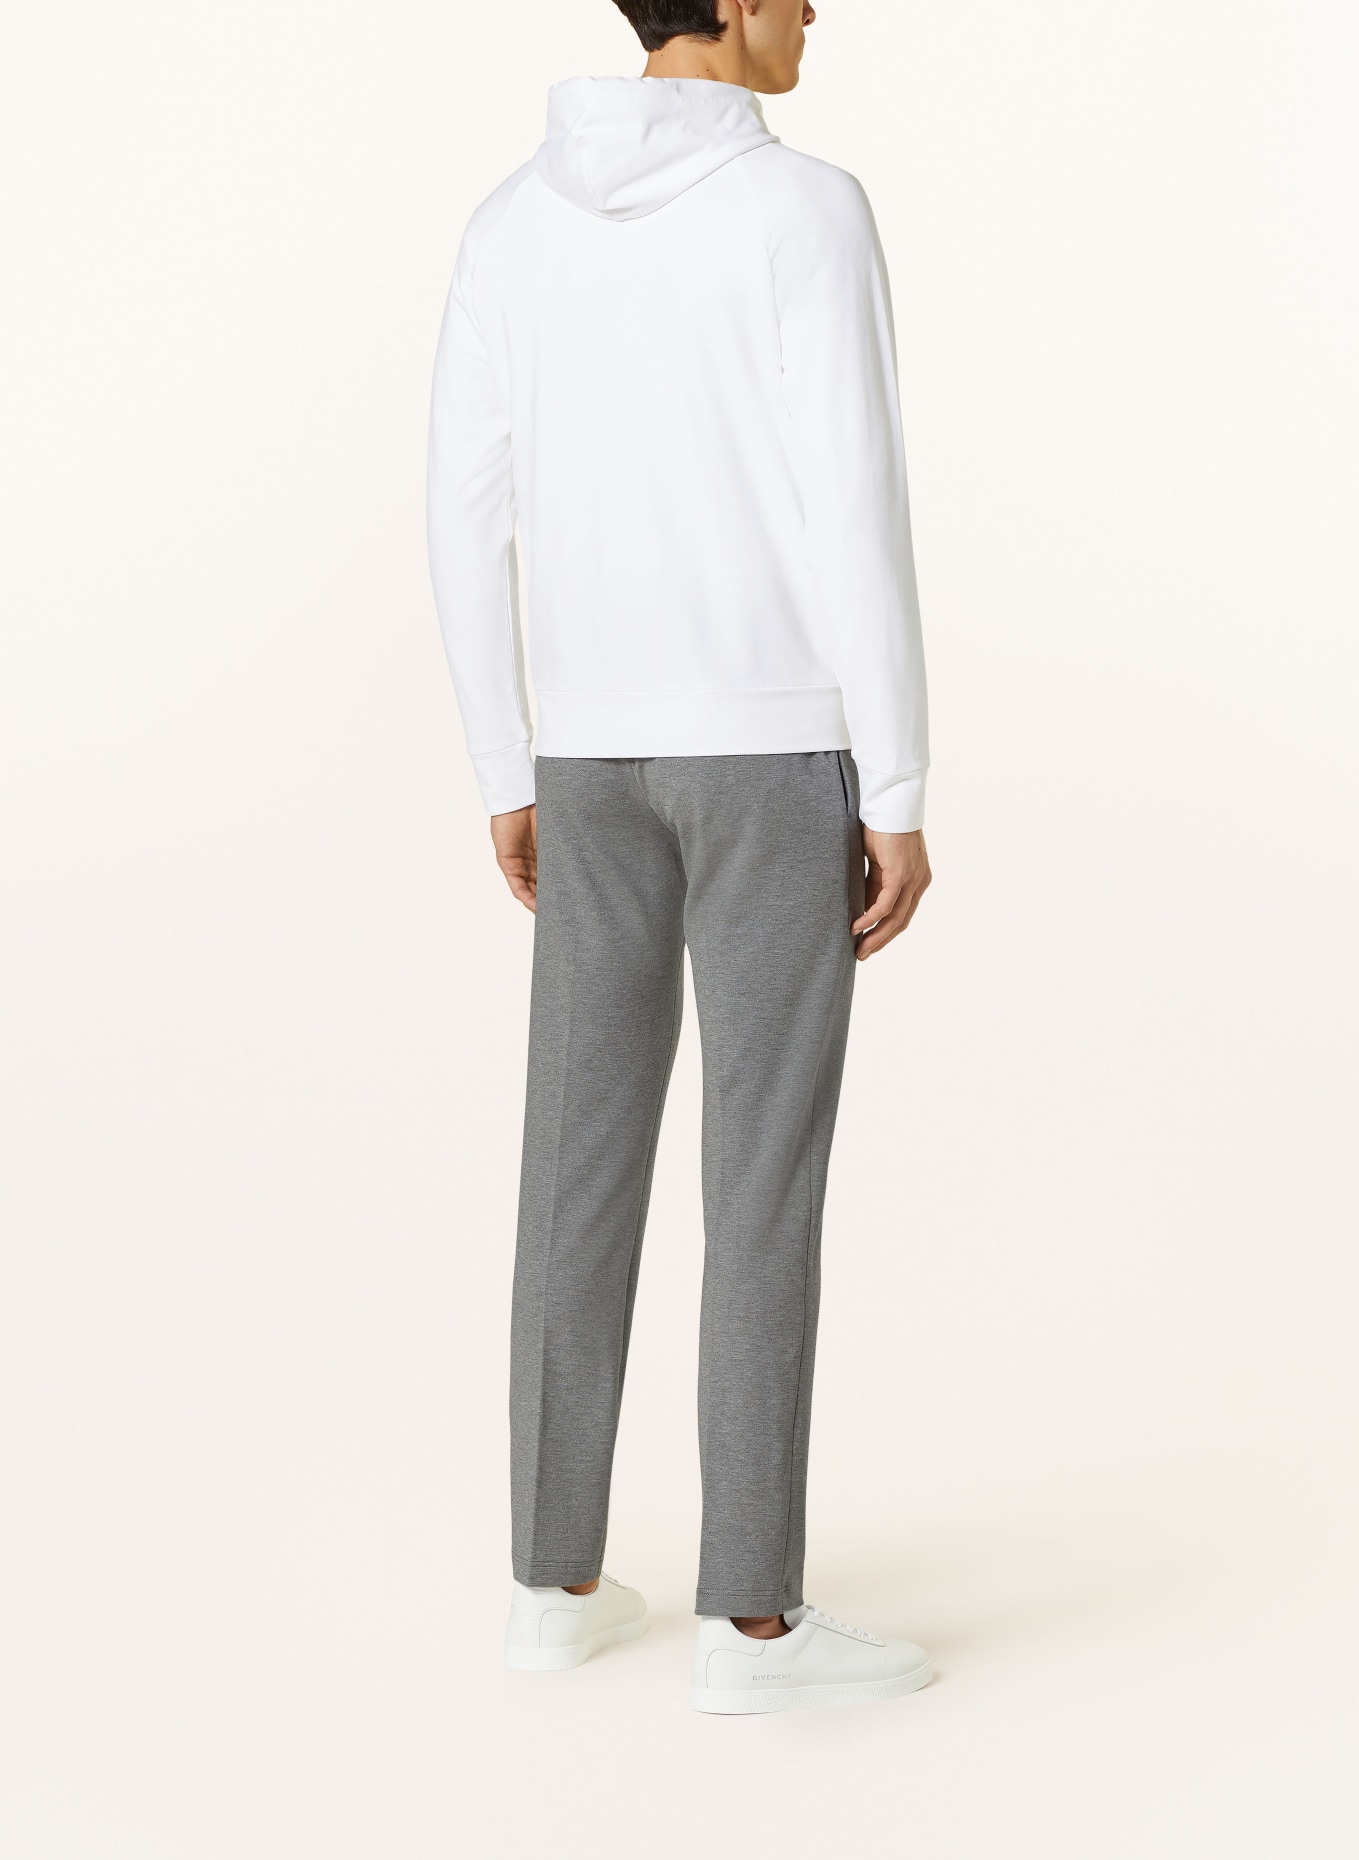 Stefan Brandt Sweat jacket, Color: WHITE (Image 3)